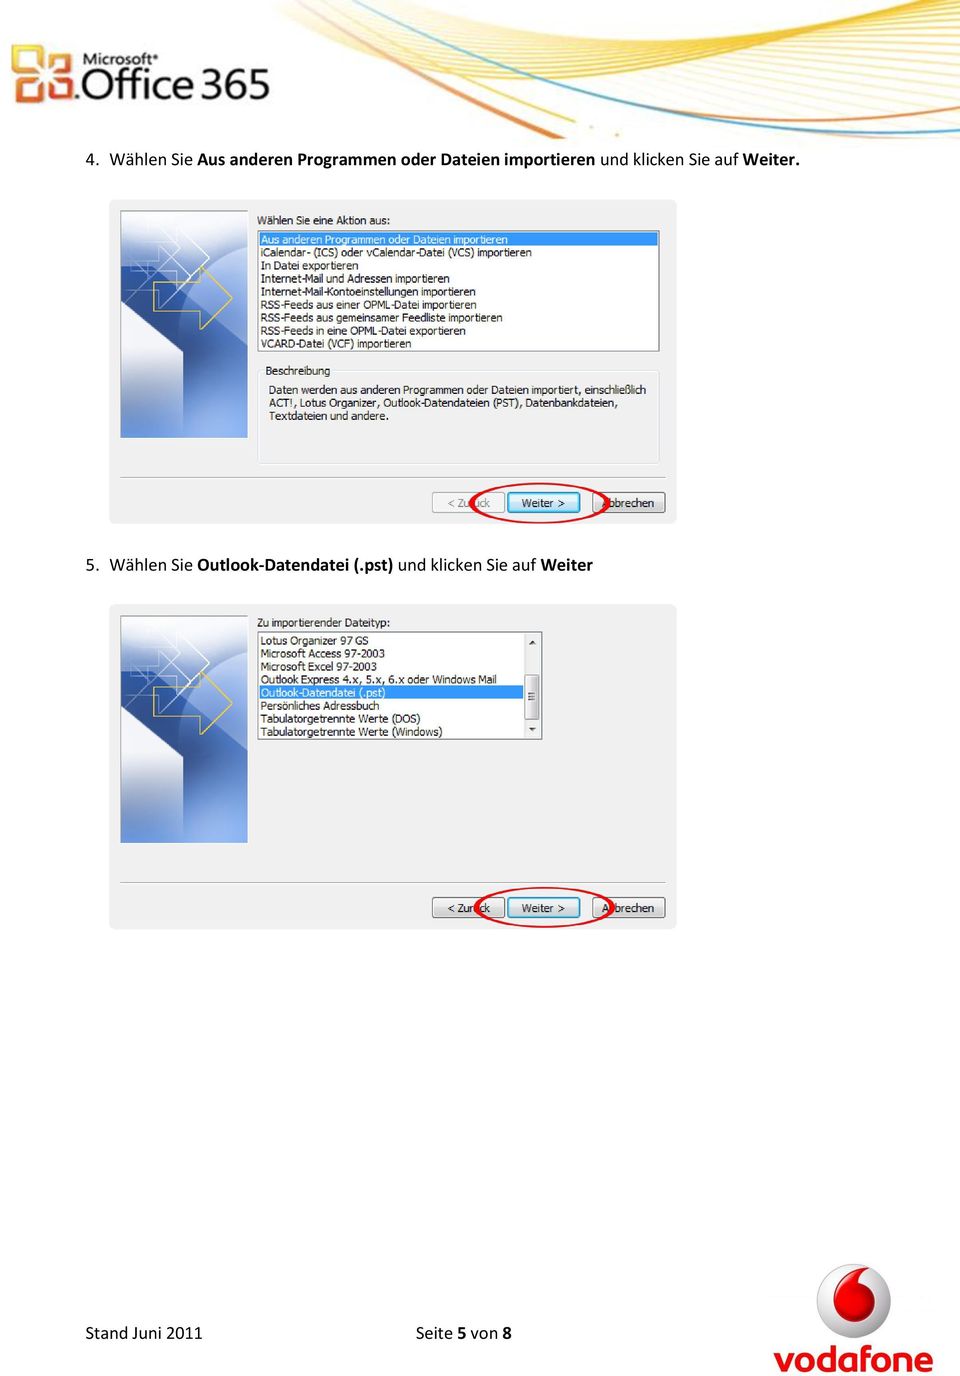 5. Wählen Sie Outlook-Datendatei (.